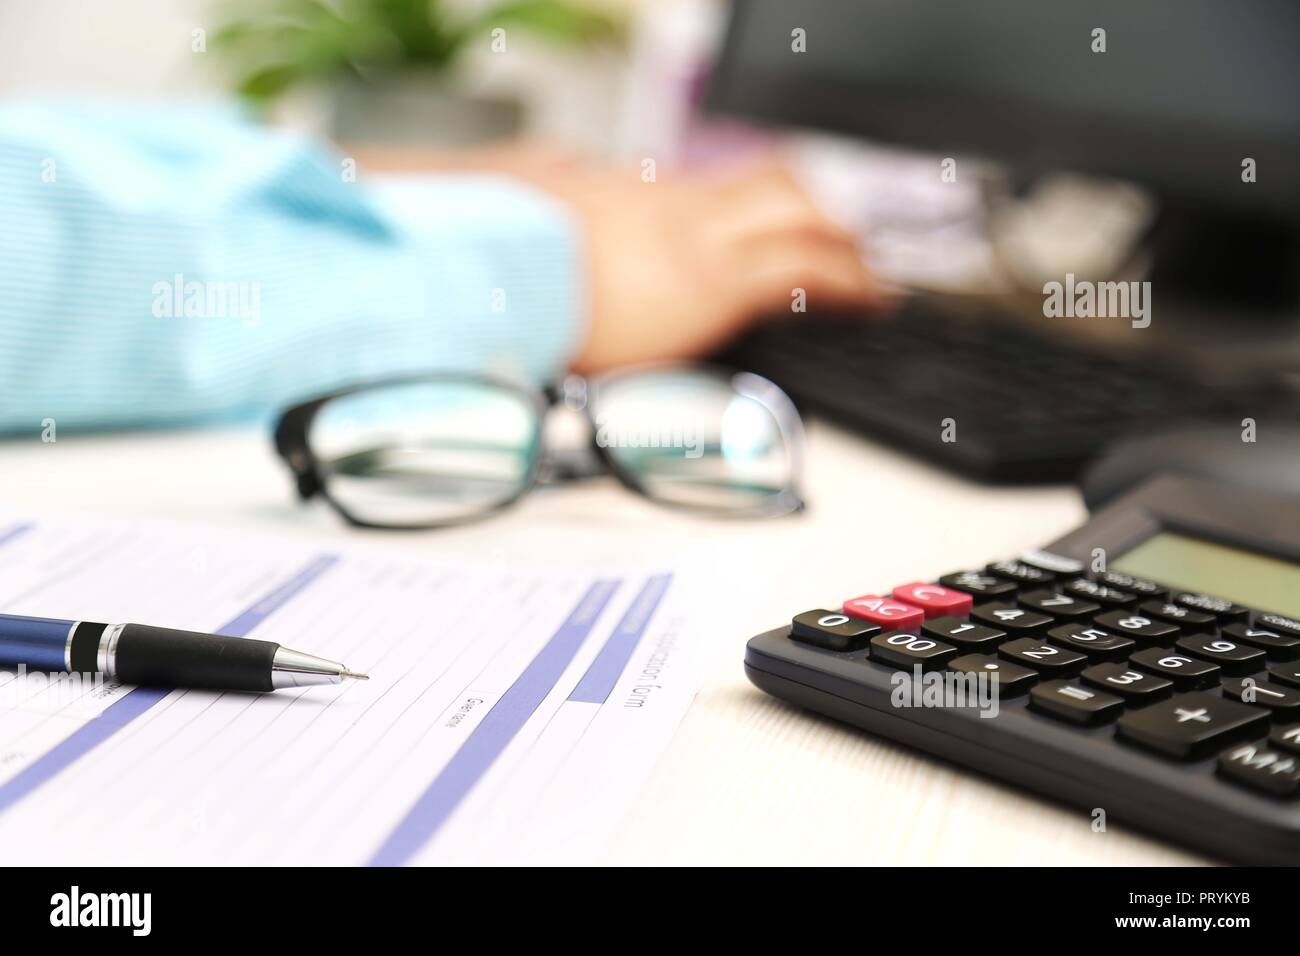 Photo de l'homme main est de taper au clavier. Photo du formulaire de demande, un stylo, calculatrice et lunettes. Banque D'Images